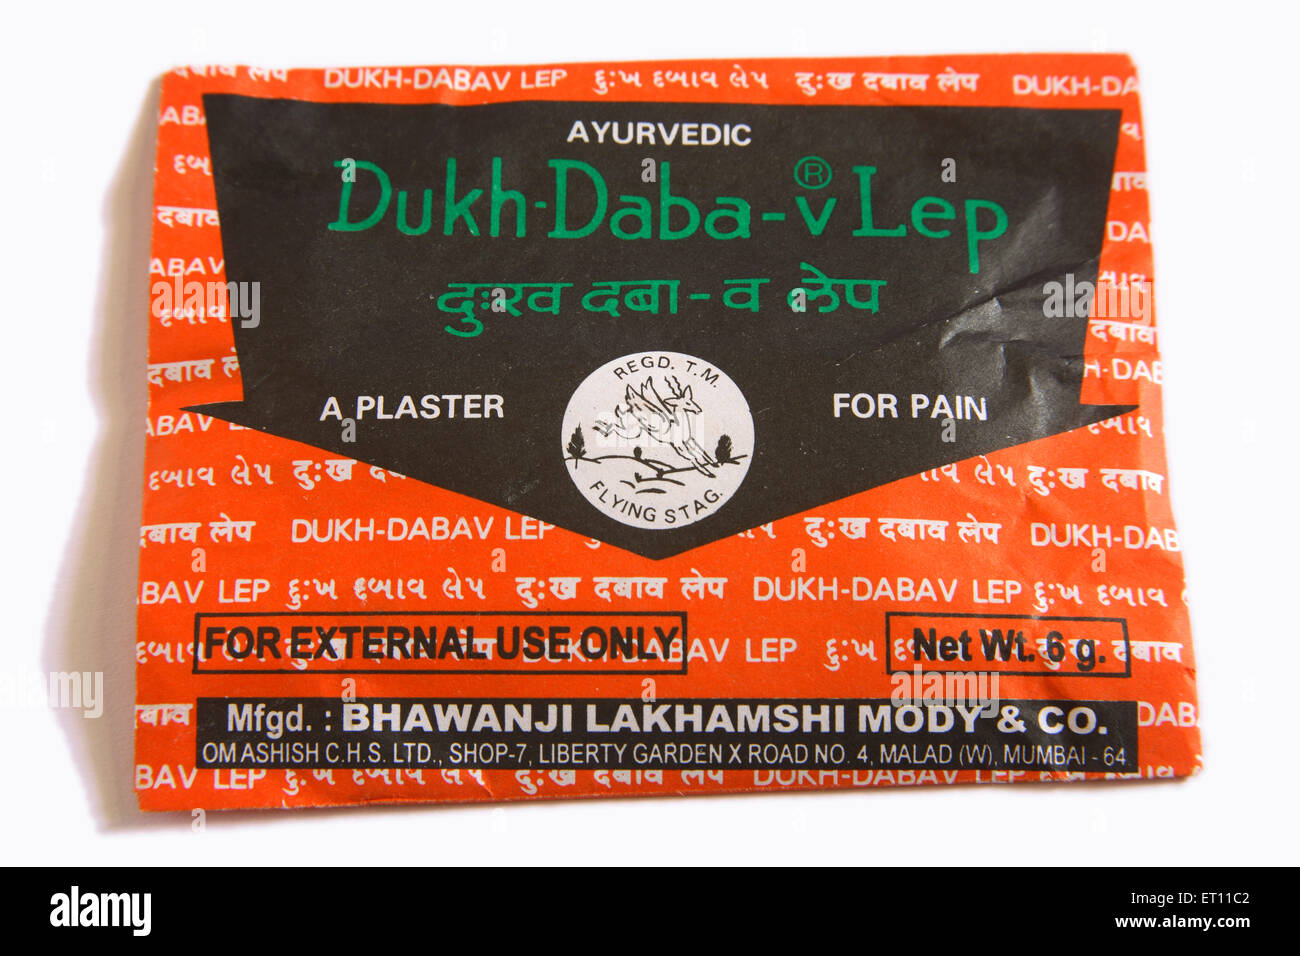 Ayurvedic medicine Dukh Daba v Lep plaster for pain in plastic packet on white background Stock Photo